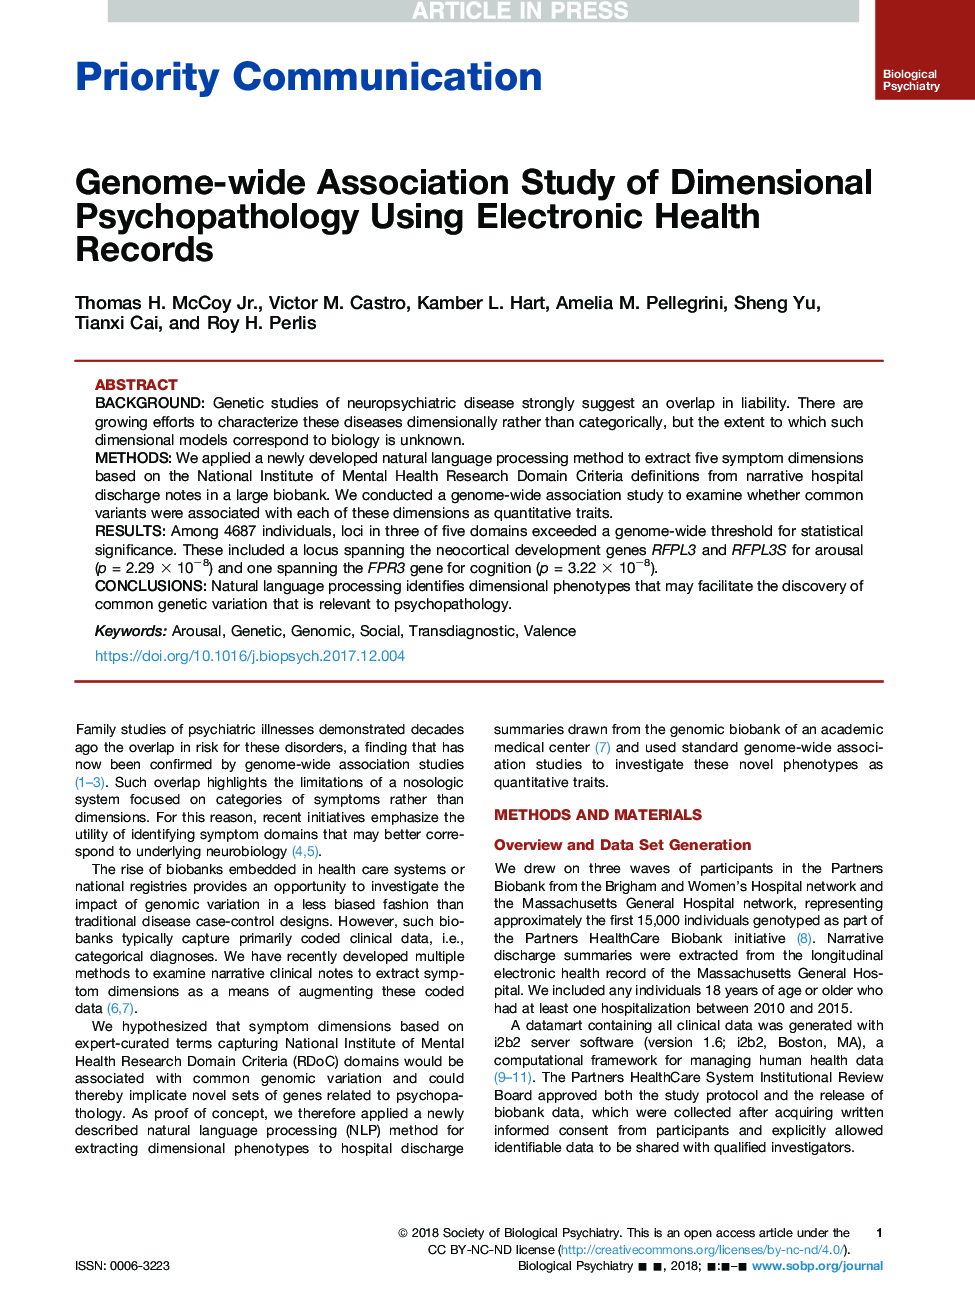 انجمن علمی روانپزشکی ابعاد پزشکی با استفاده از پرونده های سلامت الکترونیک 